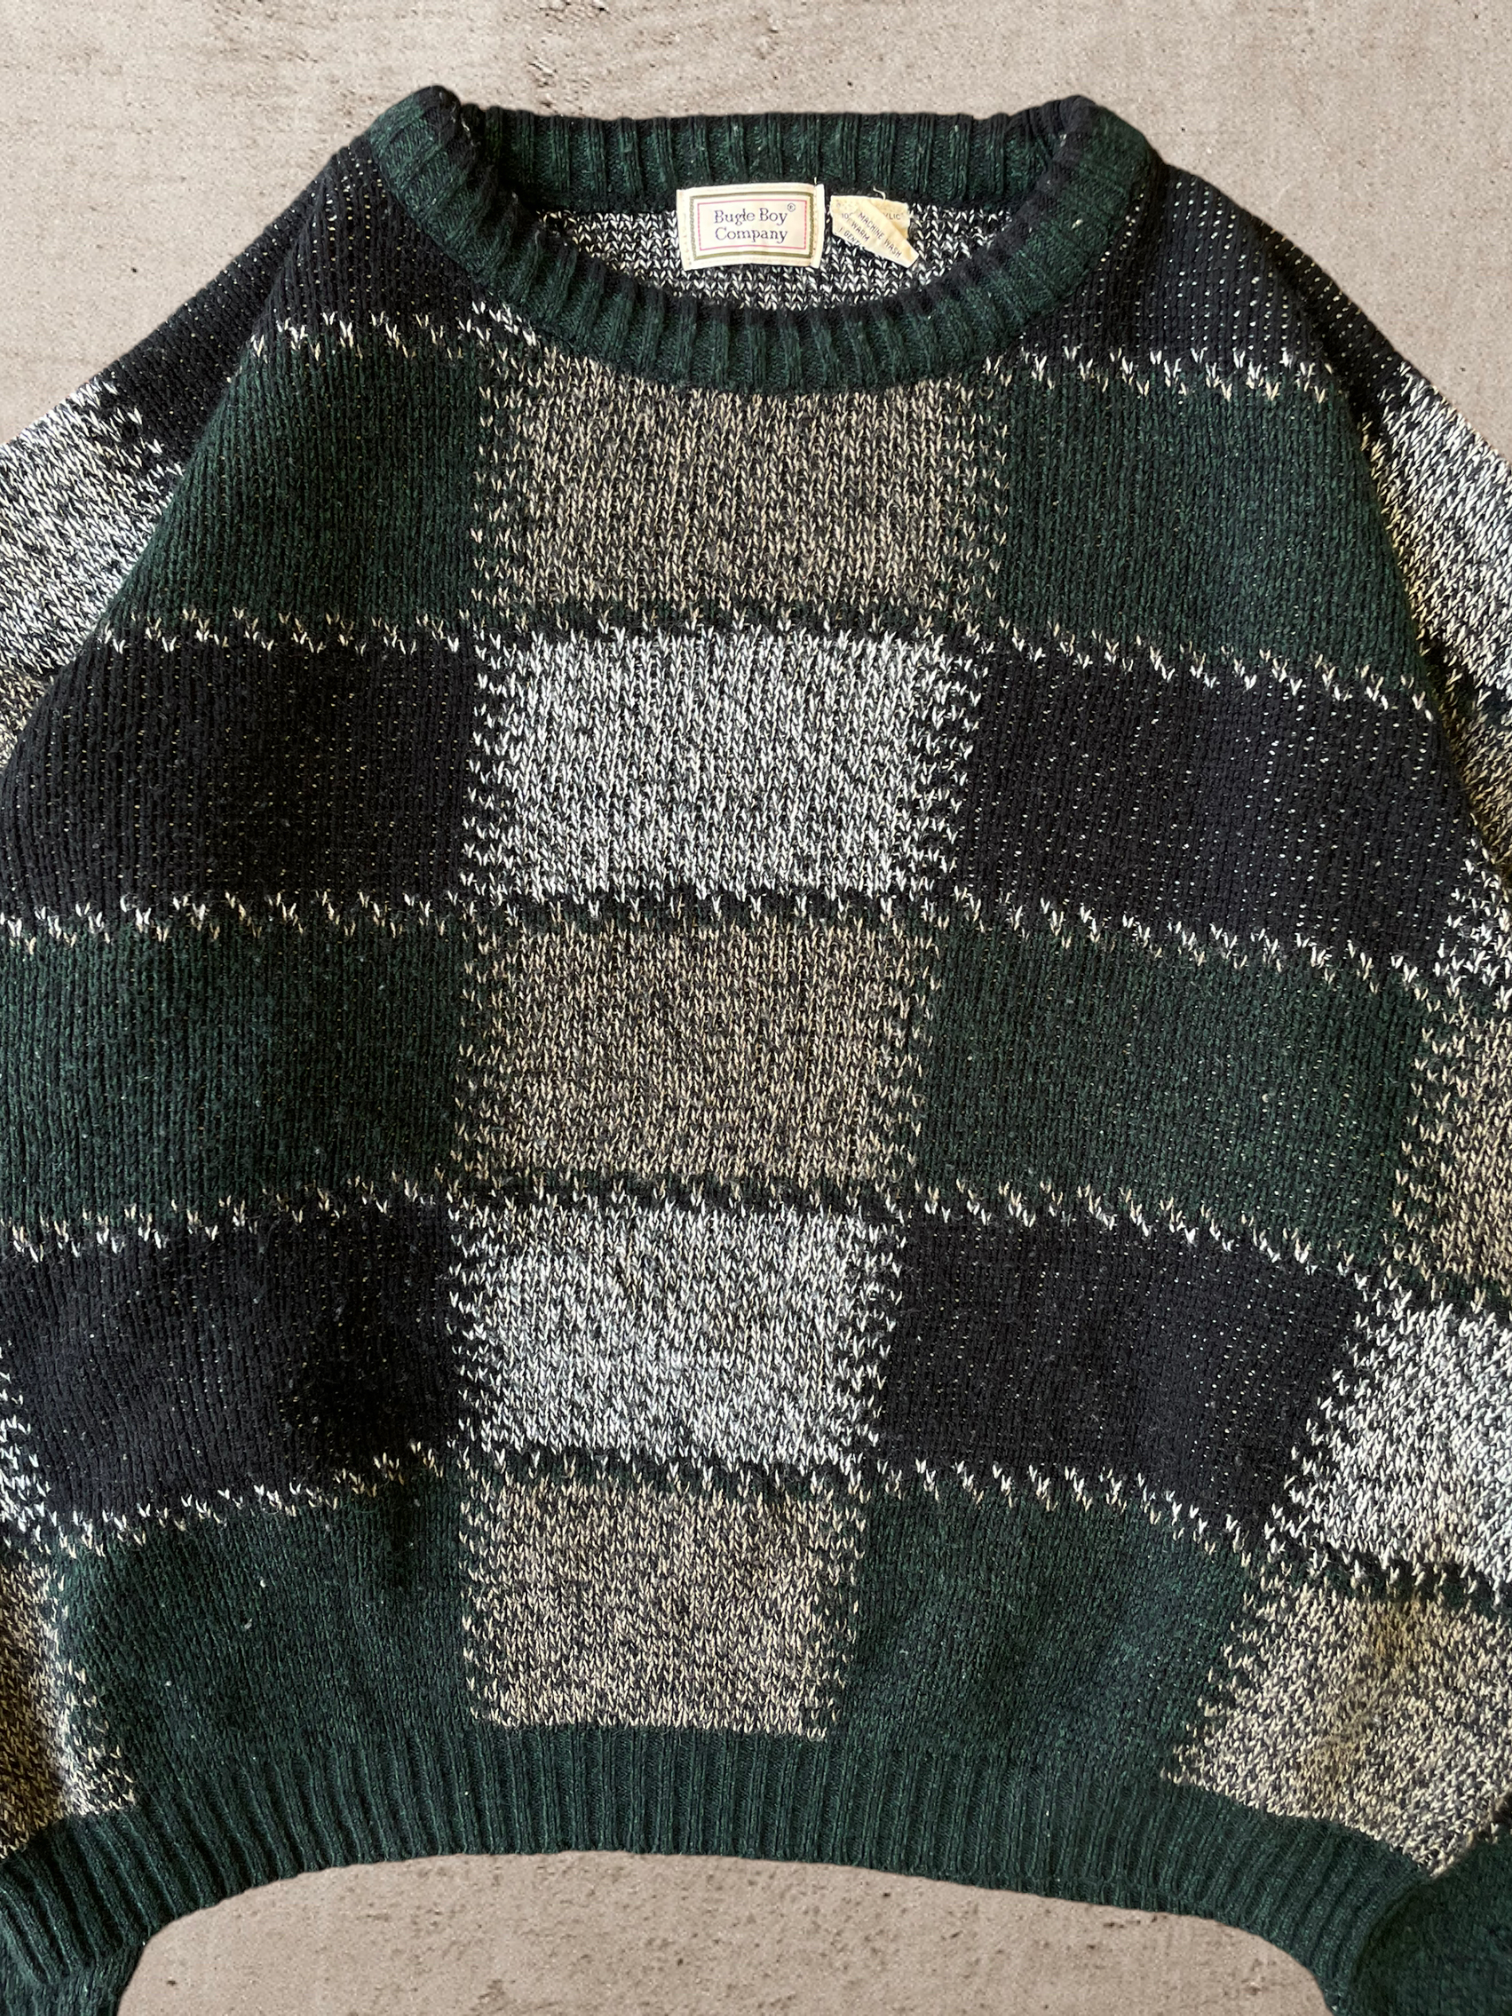 90s Bugle Boy Knit Sweater Boxy Fit - Large/XL